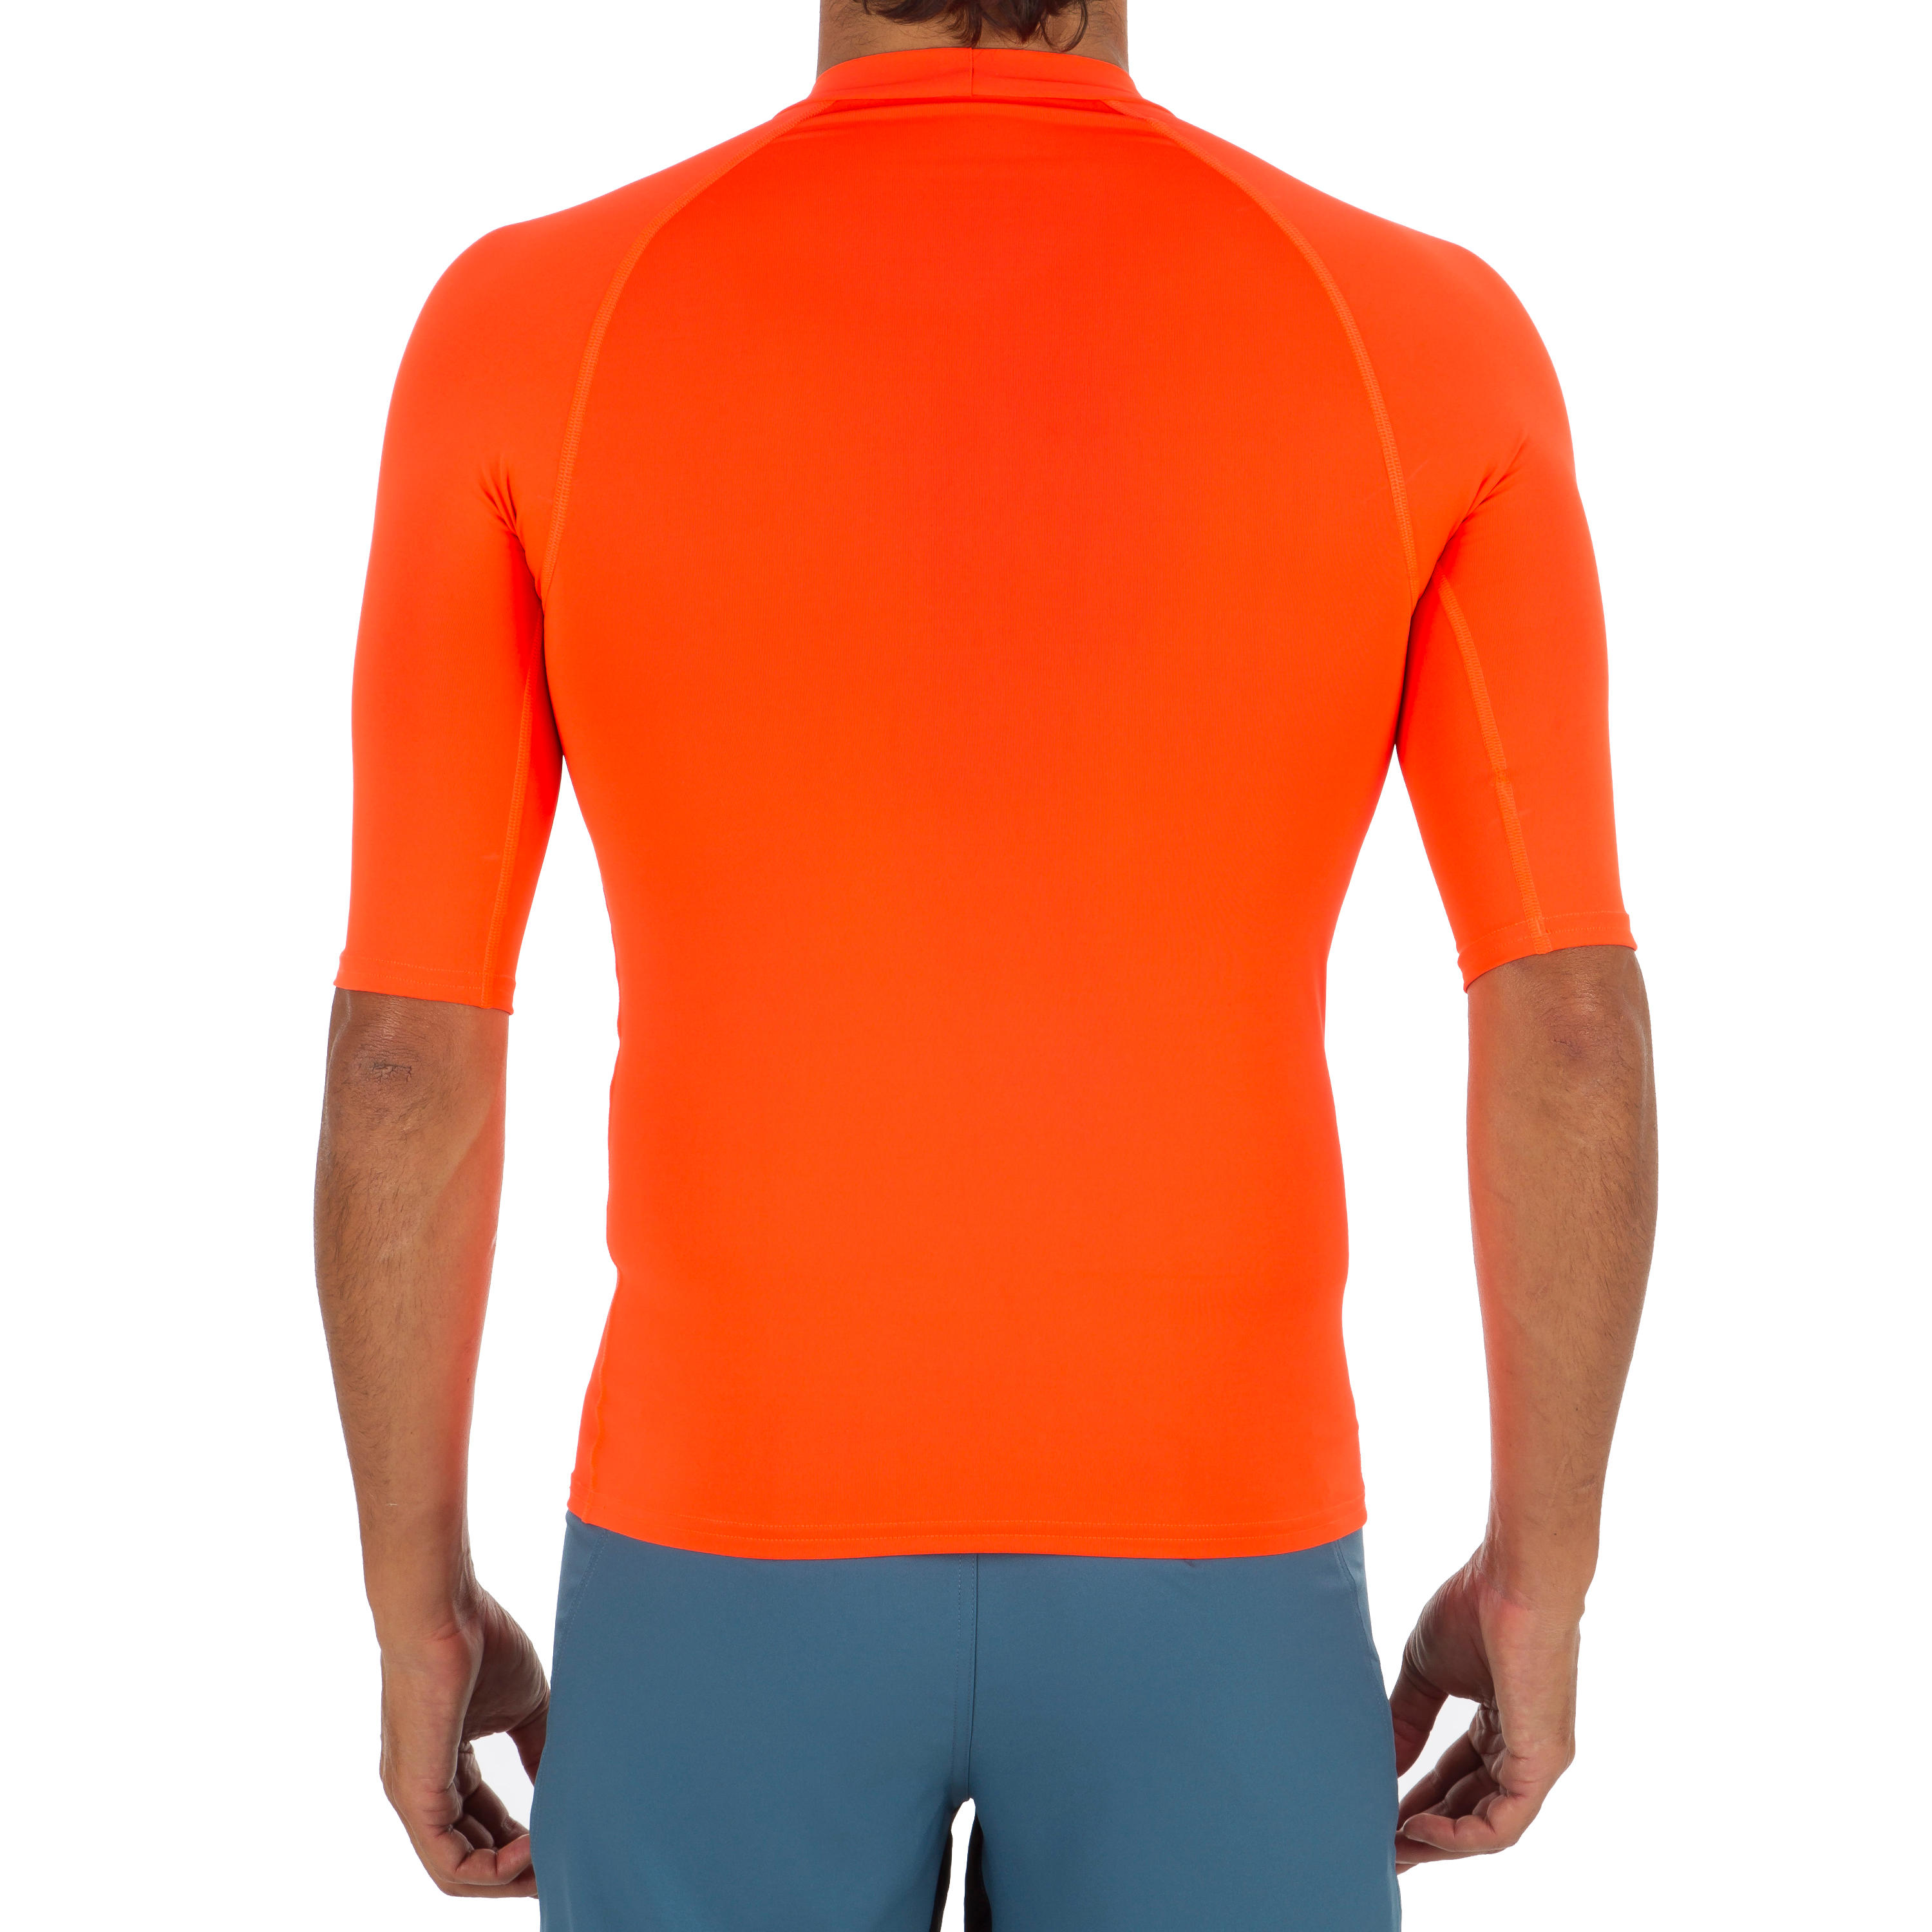 Men's short sleeve UV-protection T-shirt - 100 neon orange 3/4